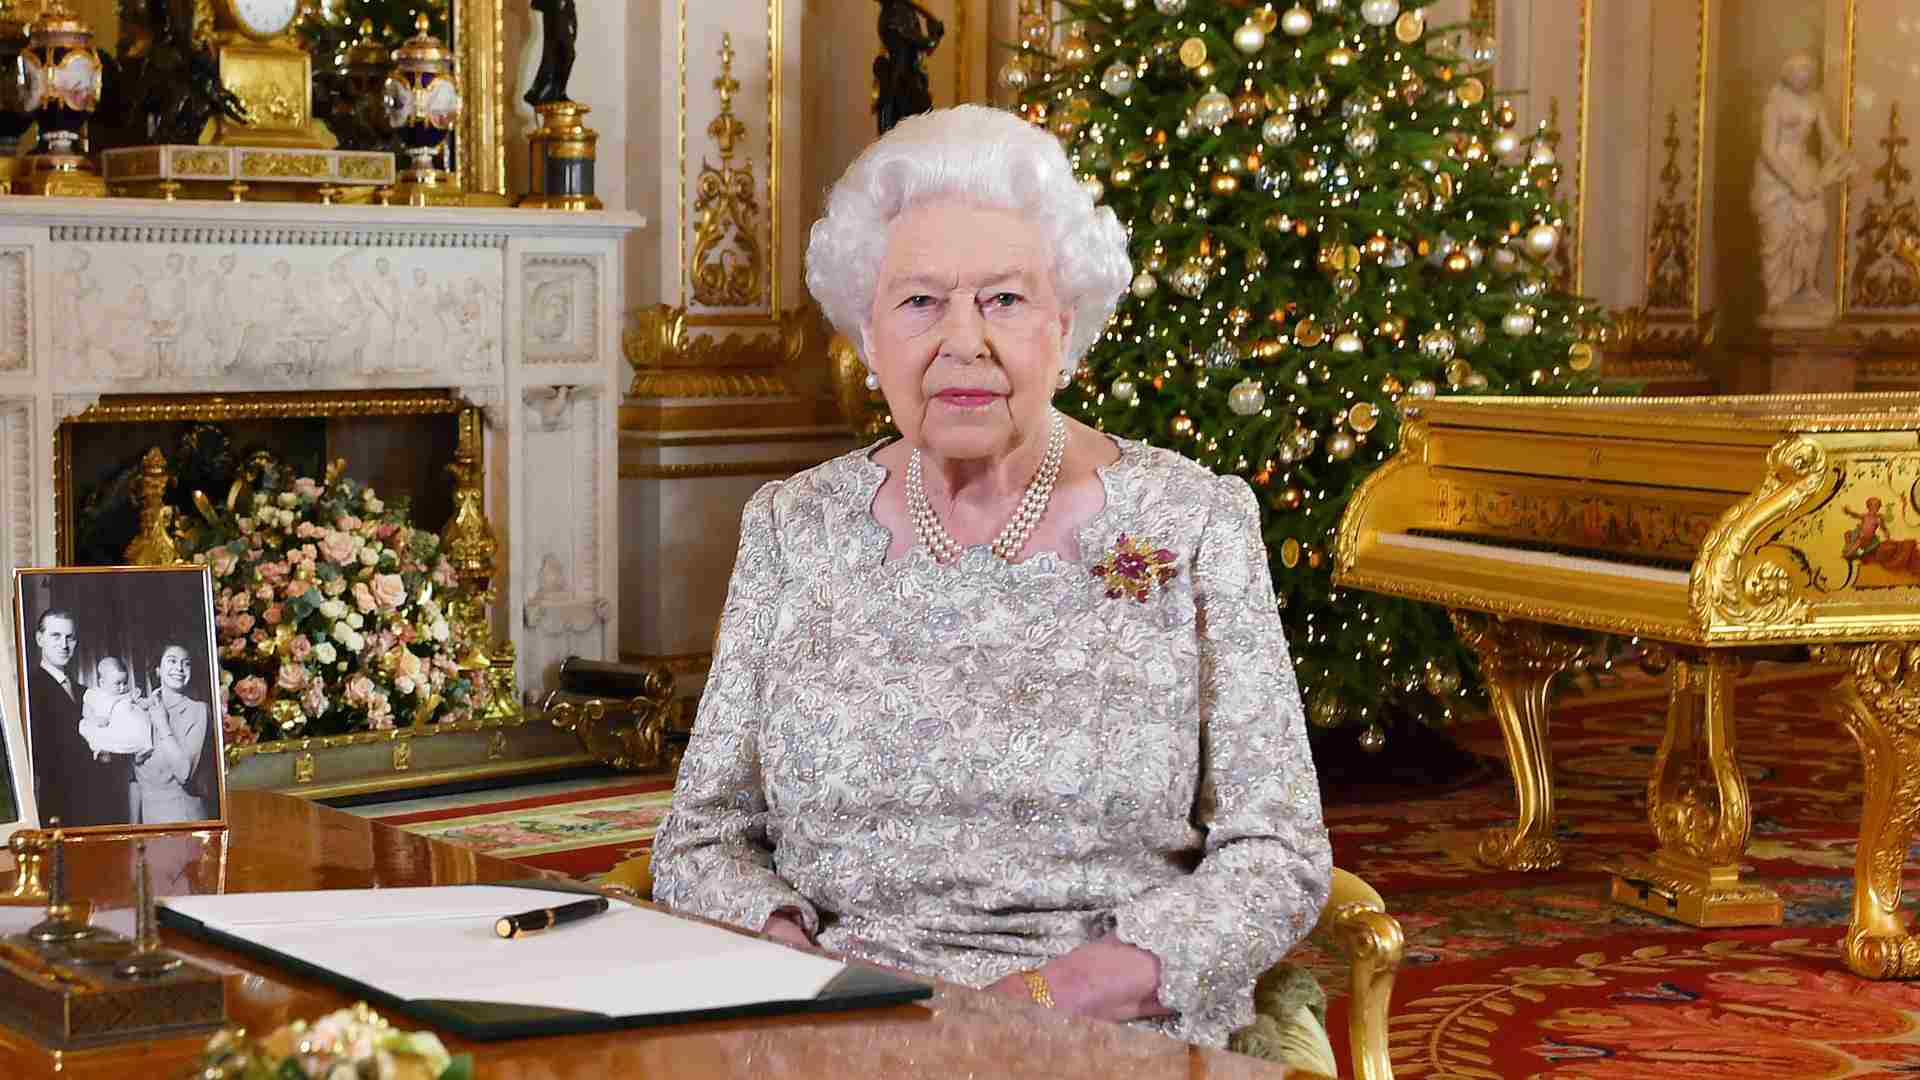 La reina Isabel II pide que prevalezca "el respeto" en plena crisis política por el Brexit